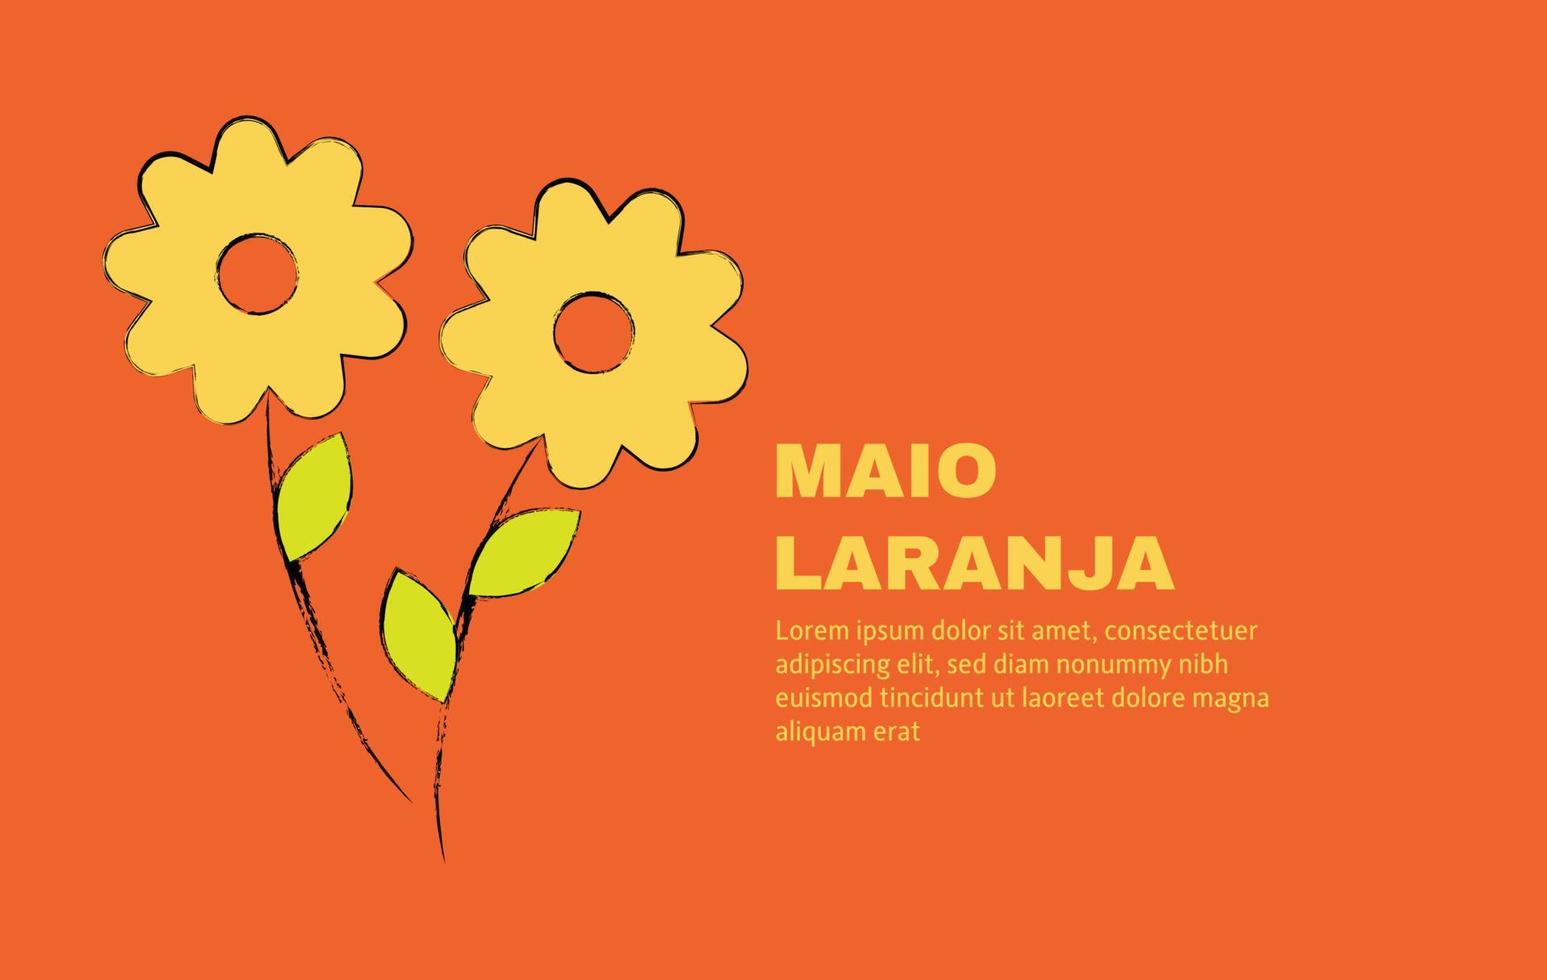 maio laranja campaña contra la violencia investigación de los niños 18 de mayo escrito en portugués vector